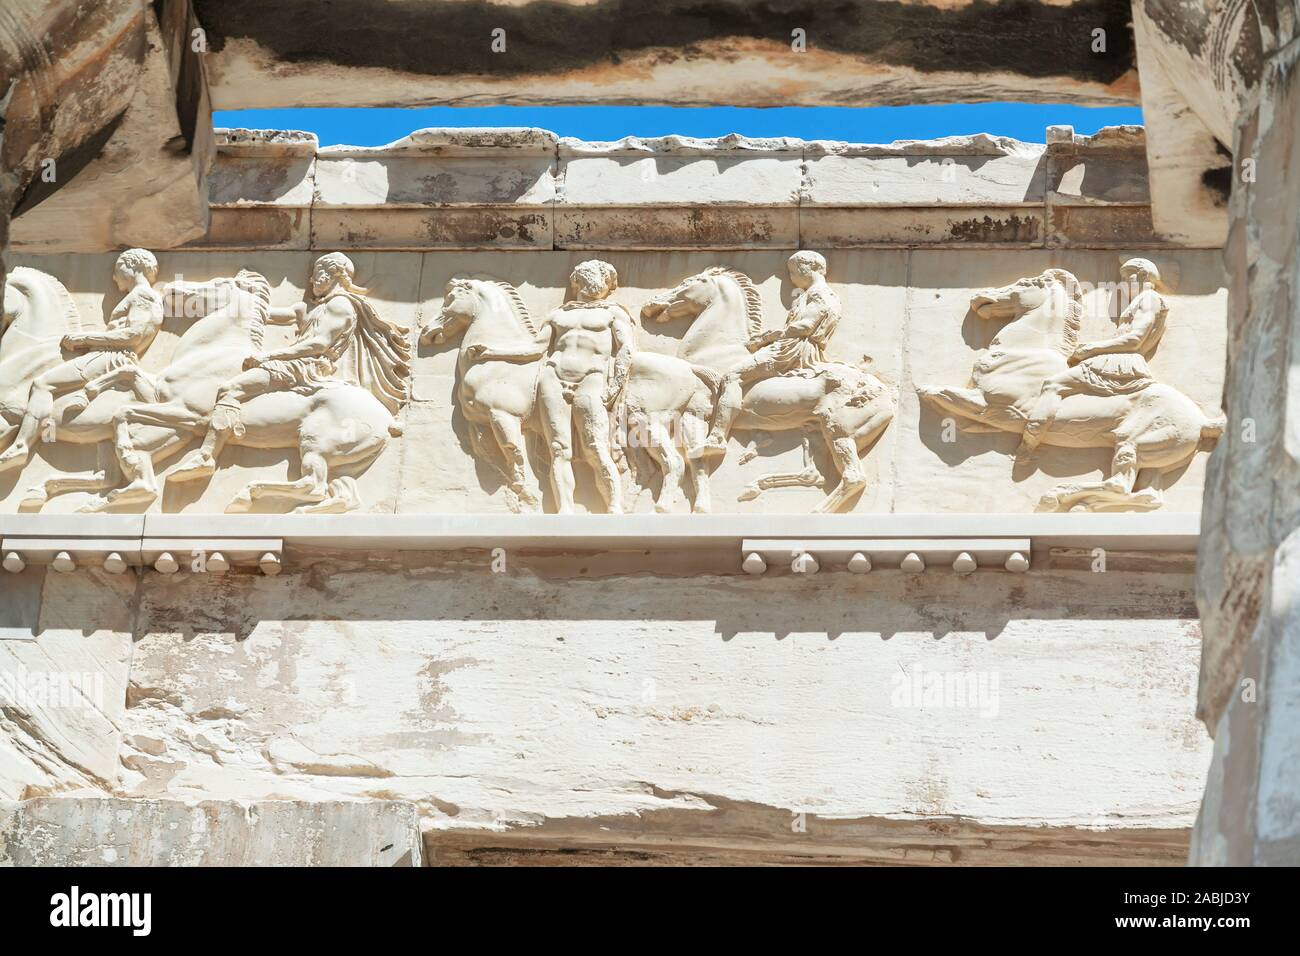 Parthenon freize, Acropolis, Athens, Greece Stock Photo